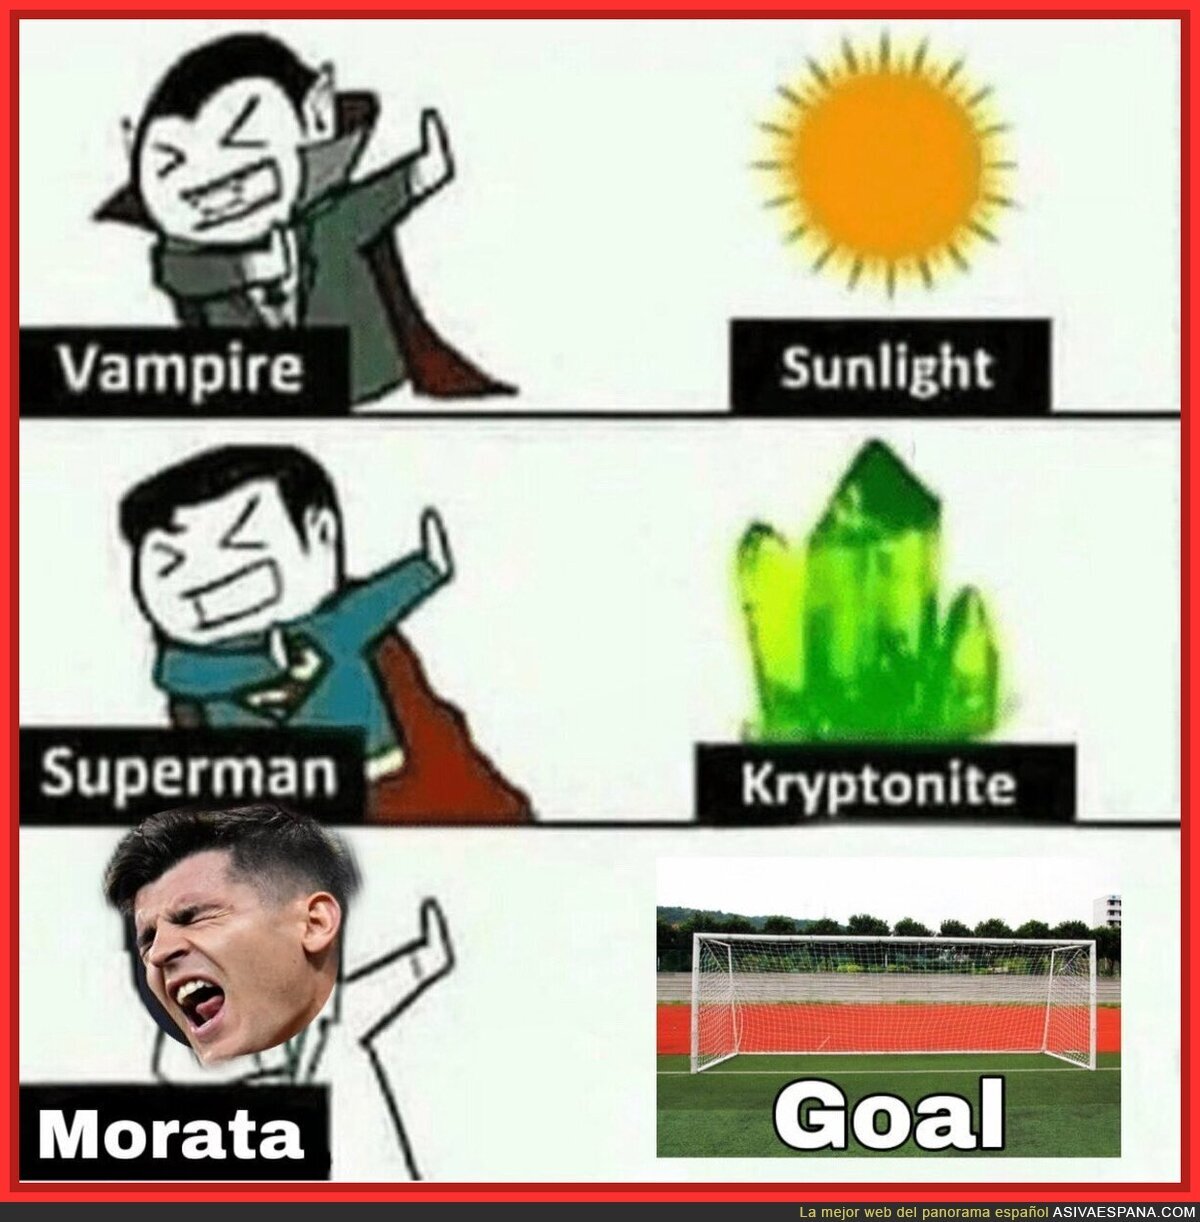 Lo que le duele a Morata